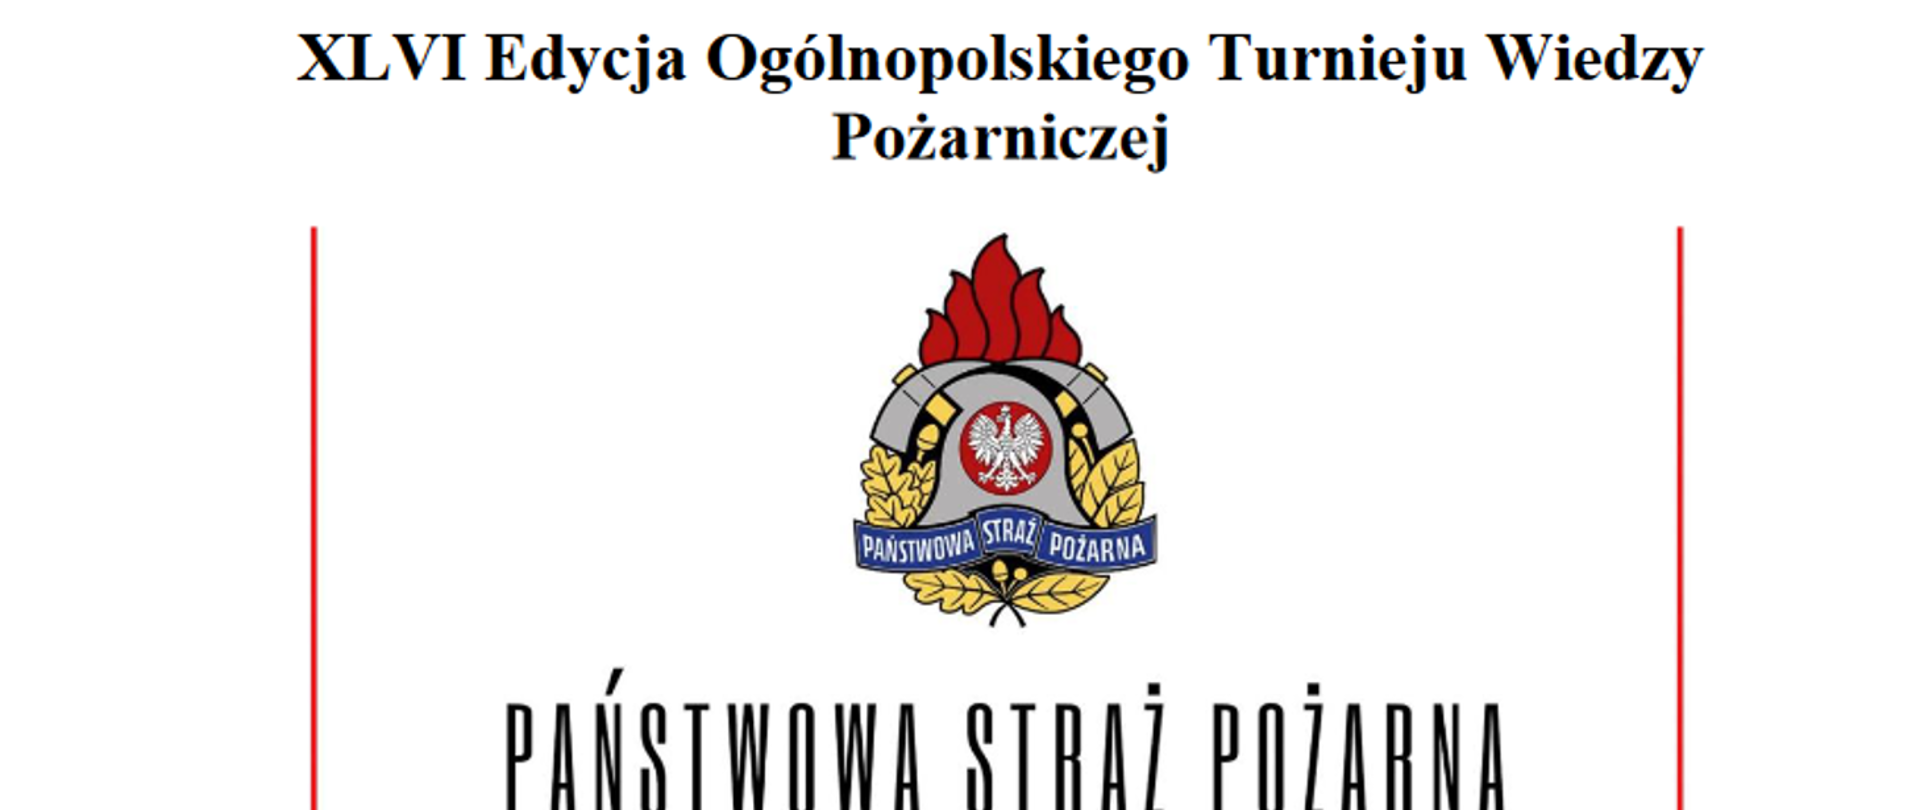 grafika zawiera napis "XLVI Edycja Ogólnopolskiego Turnieju Wiedzy Pożarniczej" poniżej logo i napis Państwowa Straż Pożarna